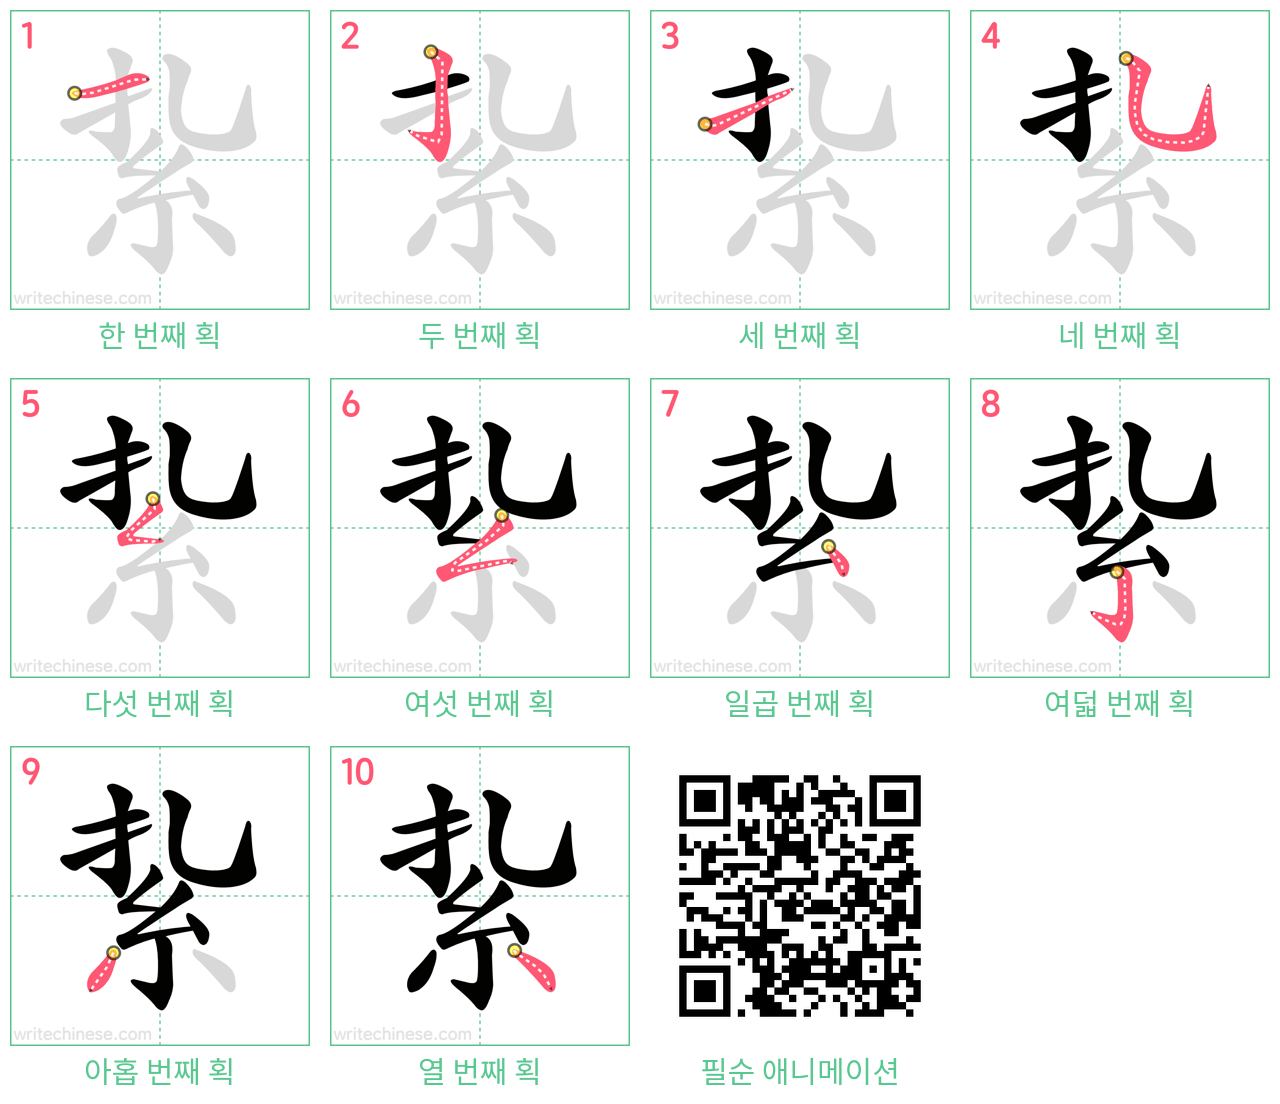 紥 step-by-step stroke order diagrams